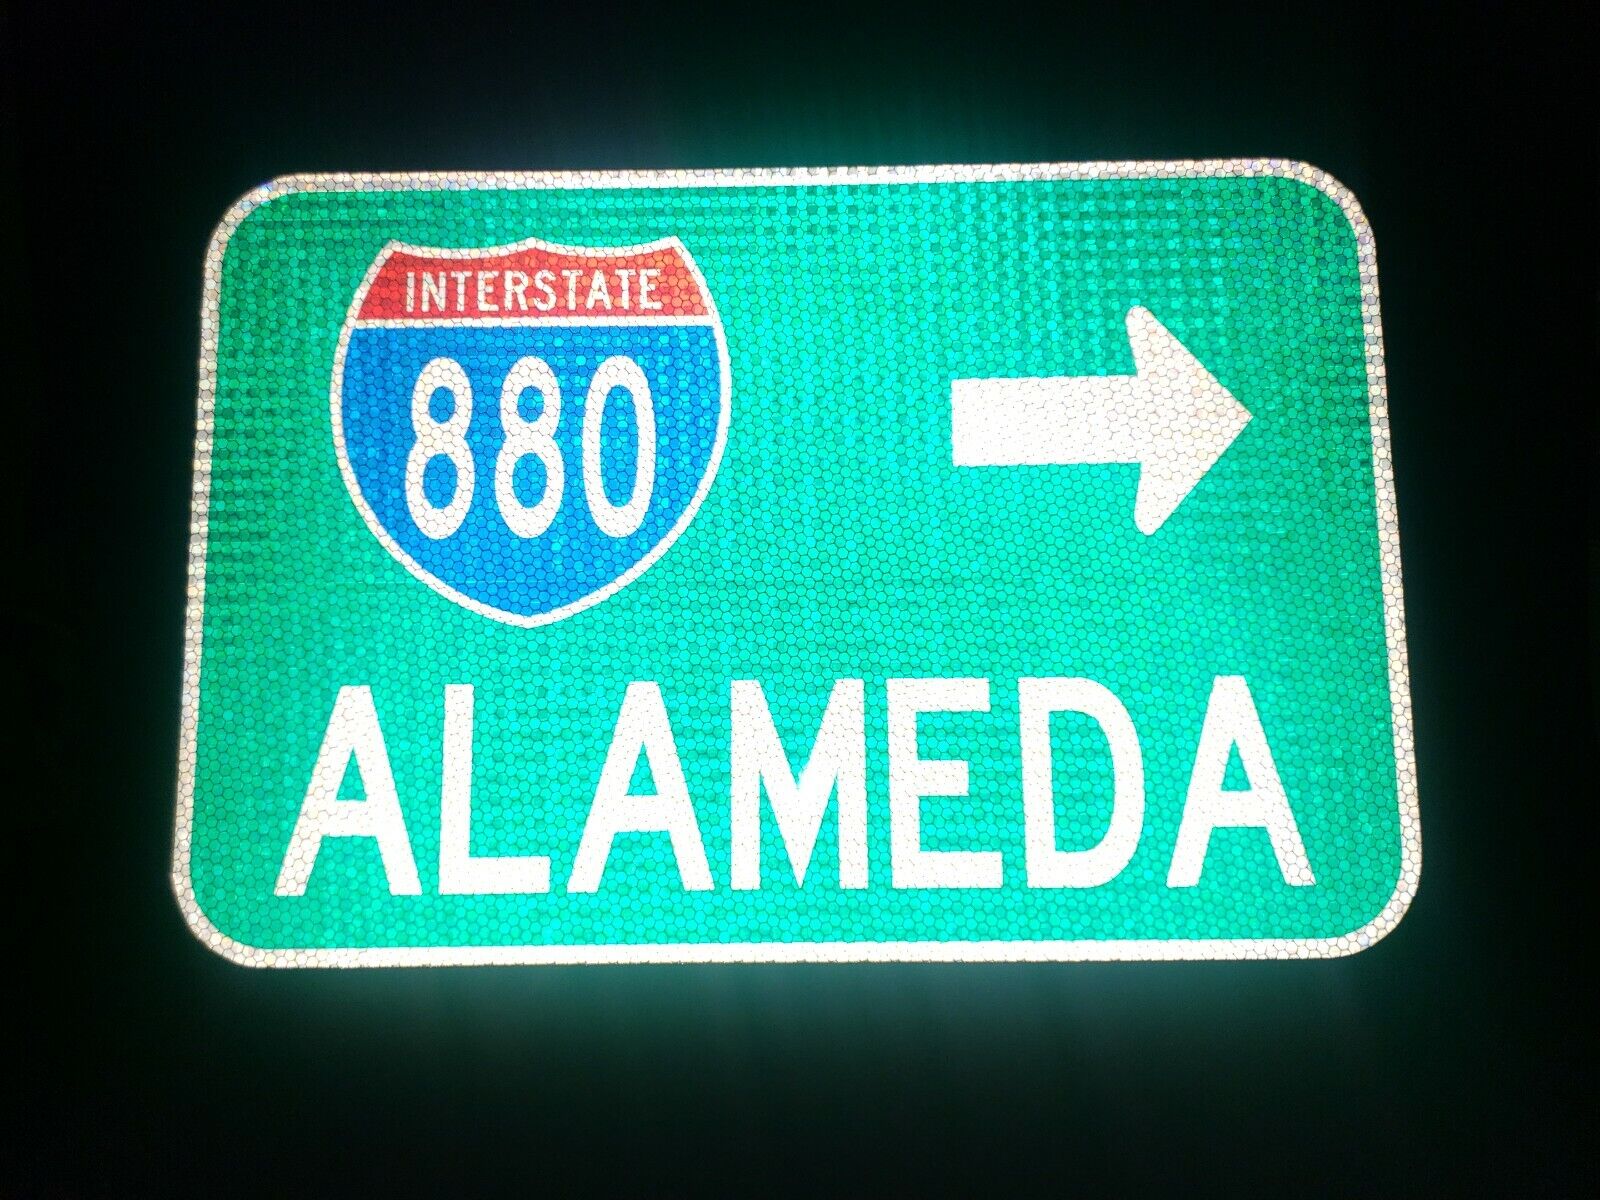 ALAMEDA, California route road sign 18